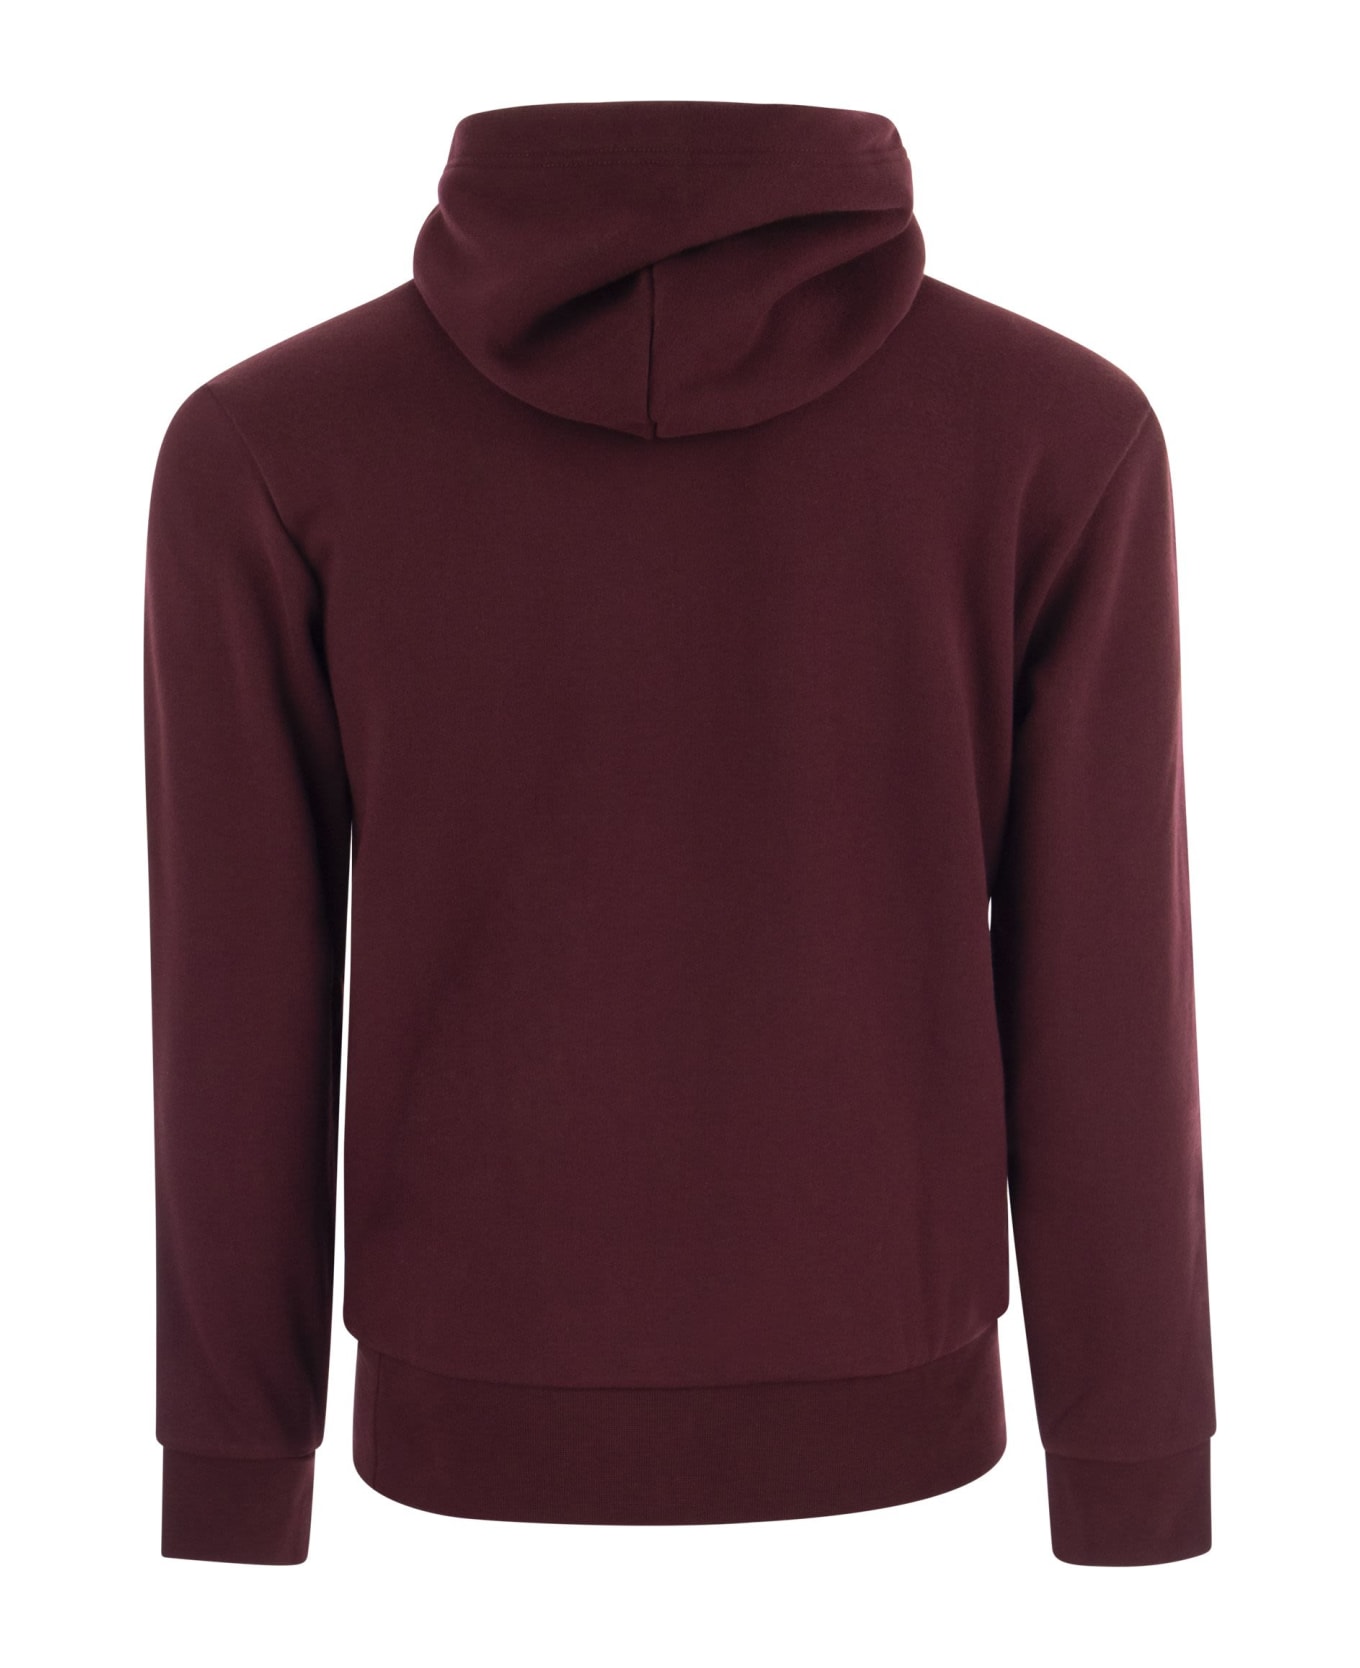 Polo Ralph Lauren Rl Sweatshirt With Hood And Logo - Bordeaux